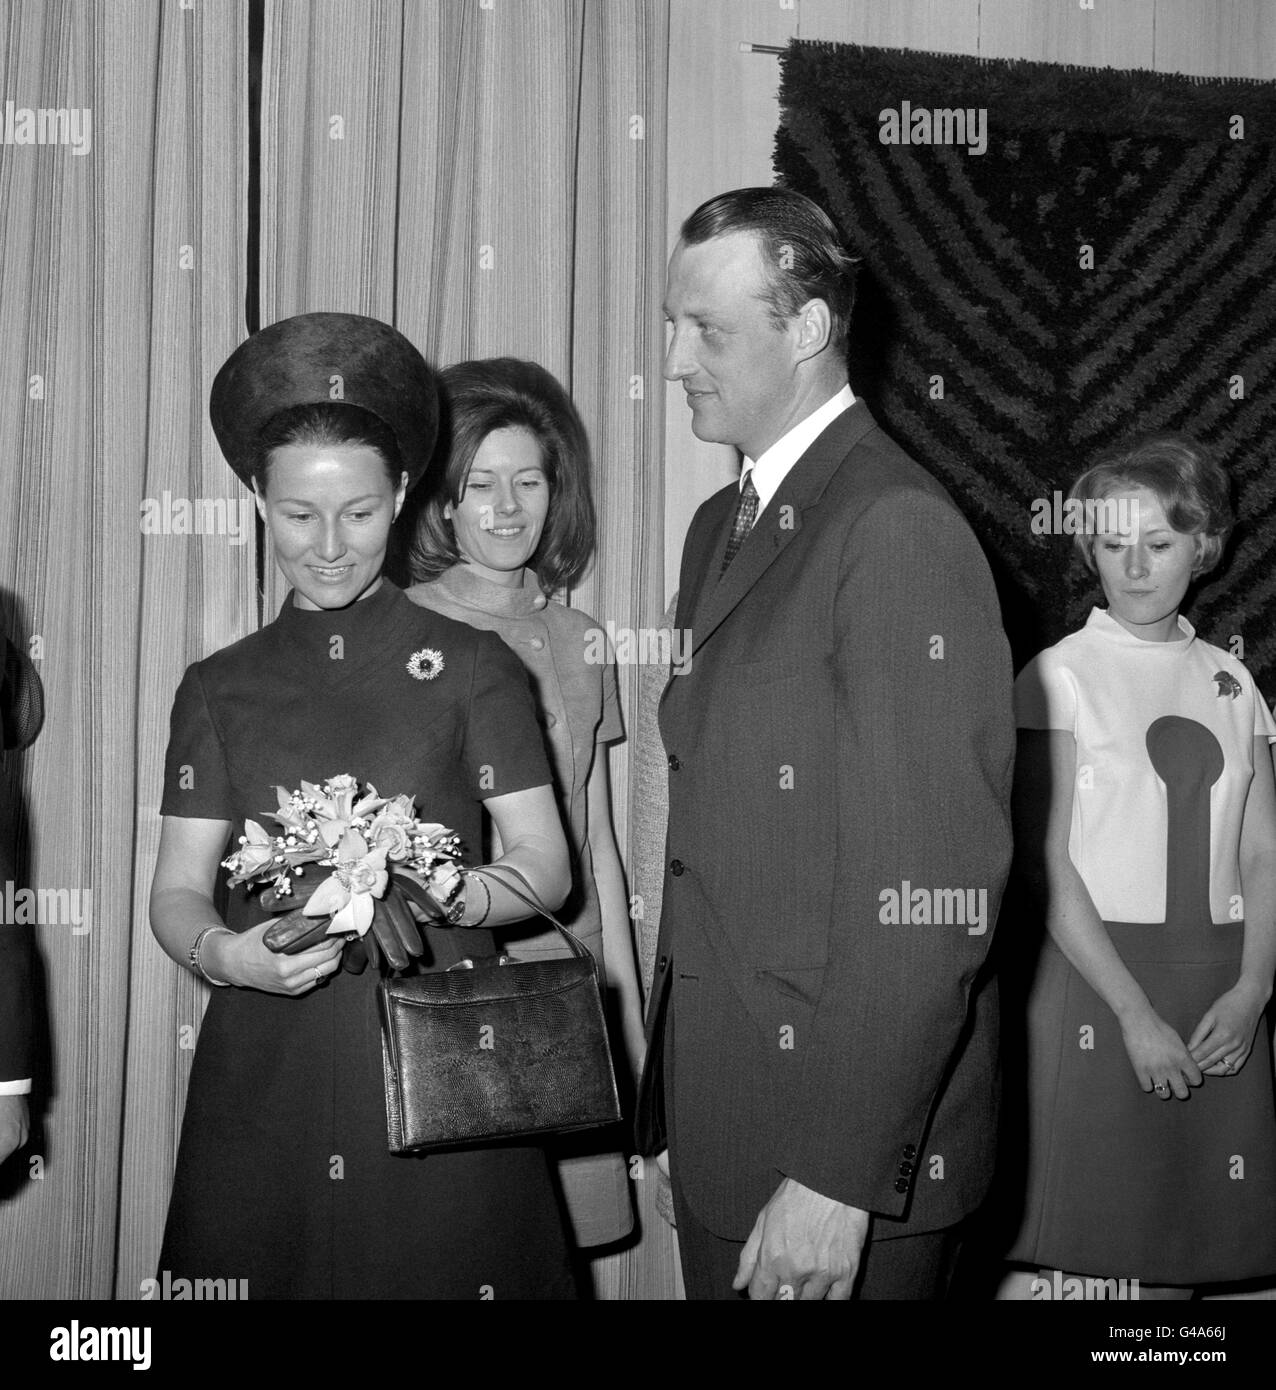 Le prince héritier Harald, de Norvège, regarde sa femme de portefeuille posy, la princesse Sonja, lors de leur premier engagement officiel en Grande-Bretagne depuis leur mariage, lorsqu'ils ont ouvert le Norway Trade Center à Pall Mall, Londres. Banque D'Images